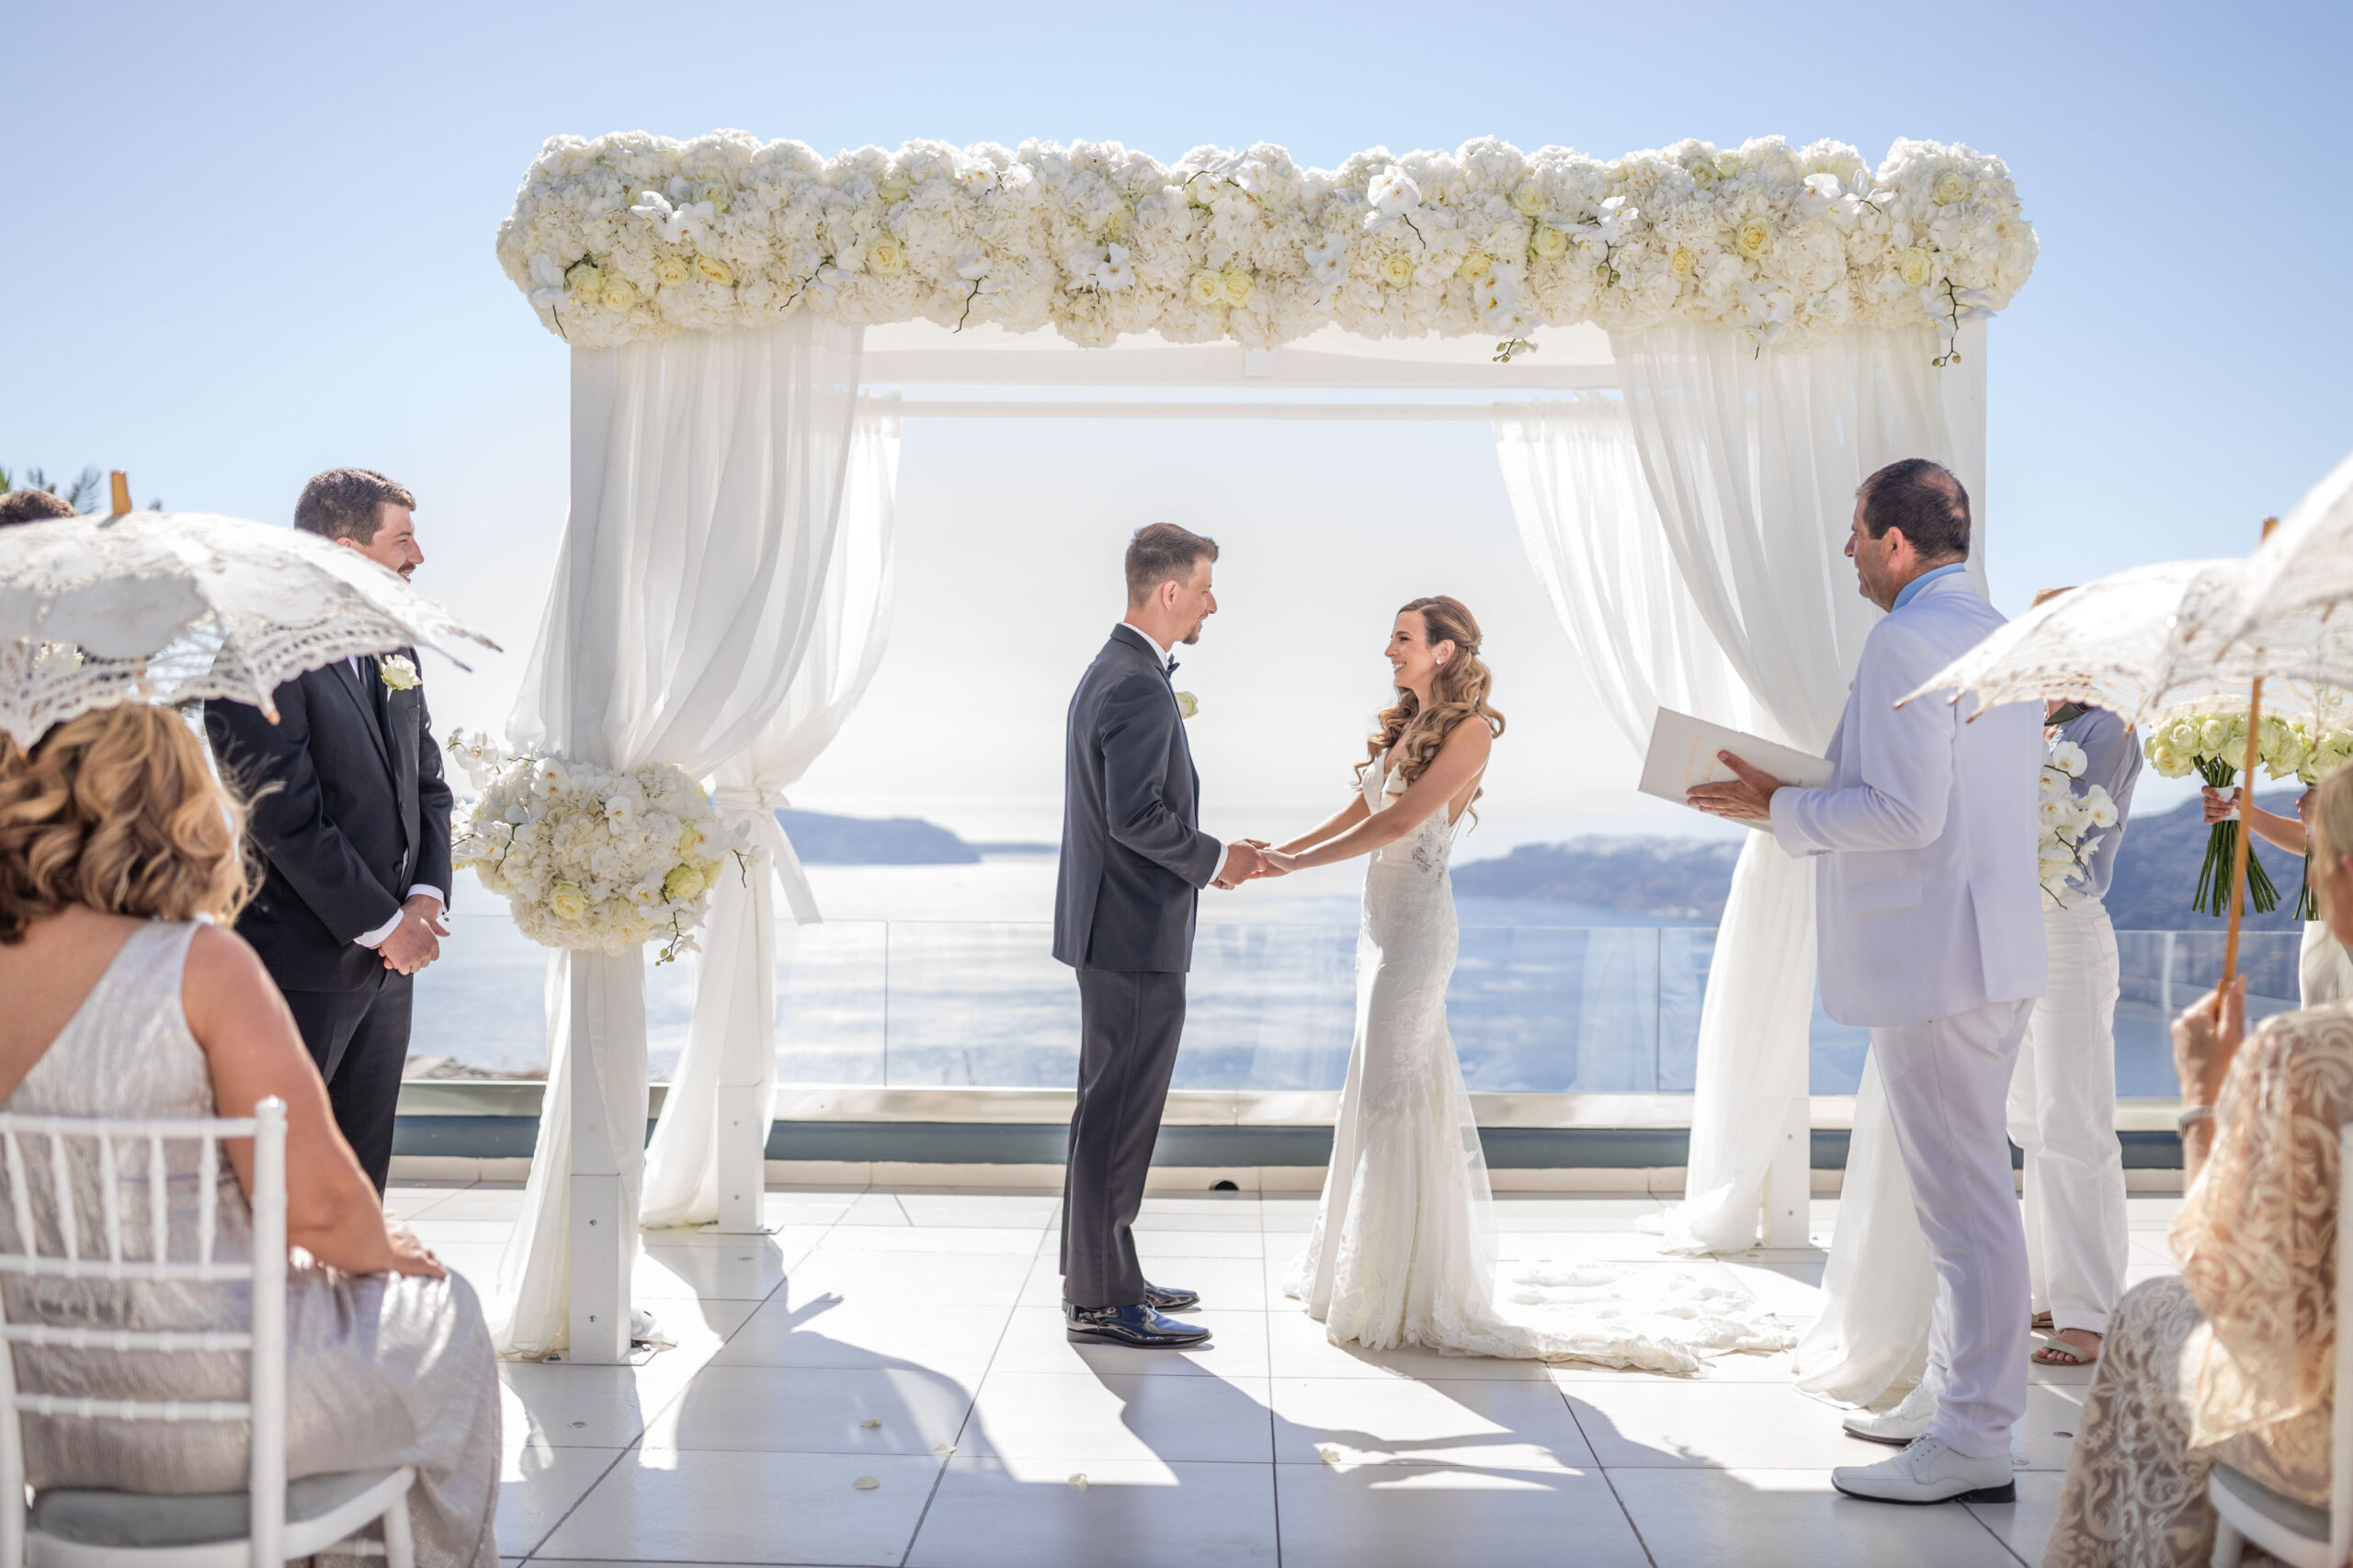 Bride and groom sharing vows at Le Ciel wedding venue in Santorini